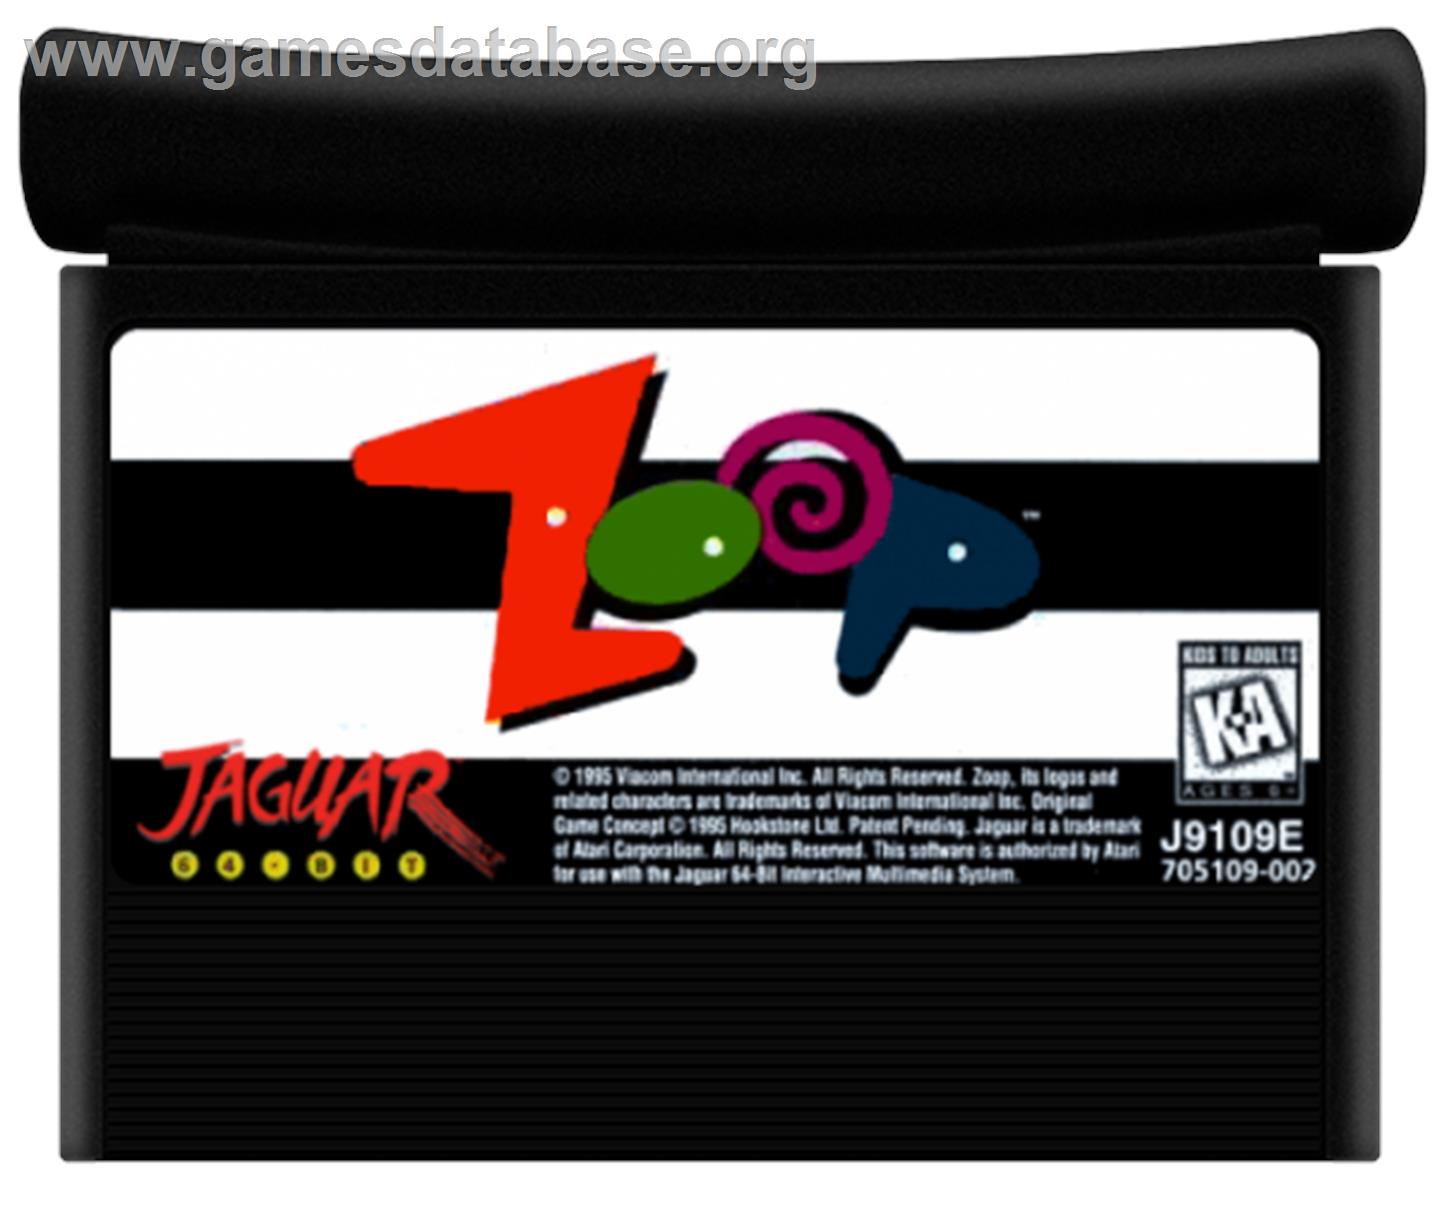 Zoop - Atari Jaguar - Artwork - Cartridge